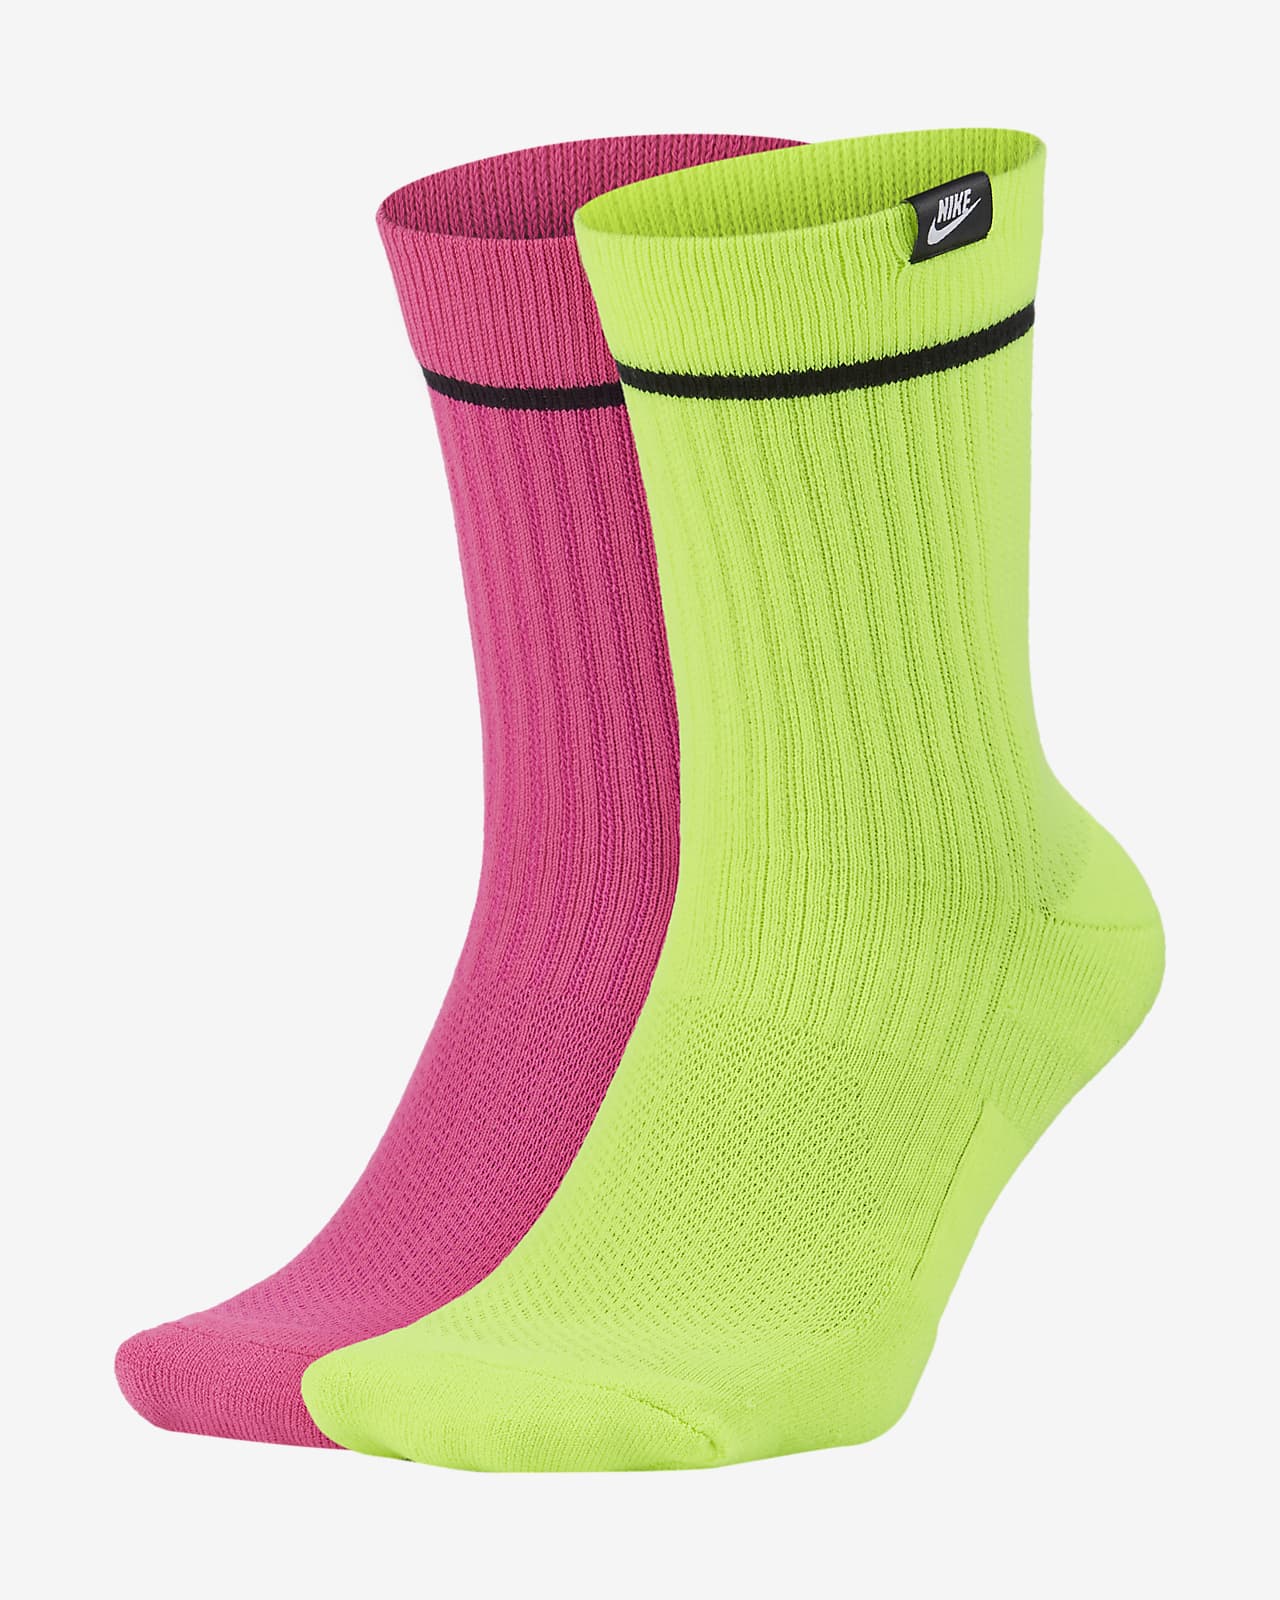 Nike SNKR Sox Unisex Crew Socks (2 